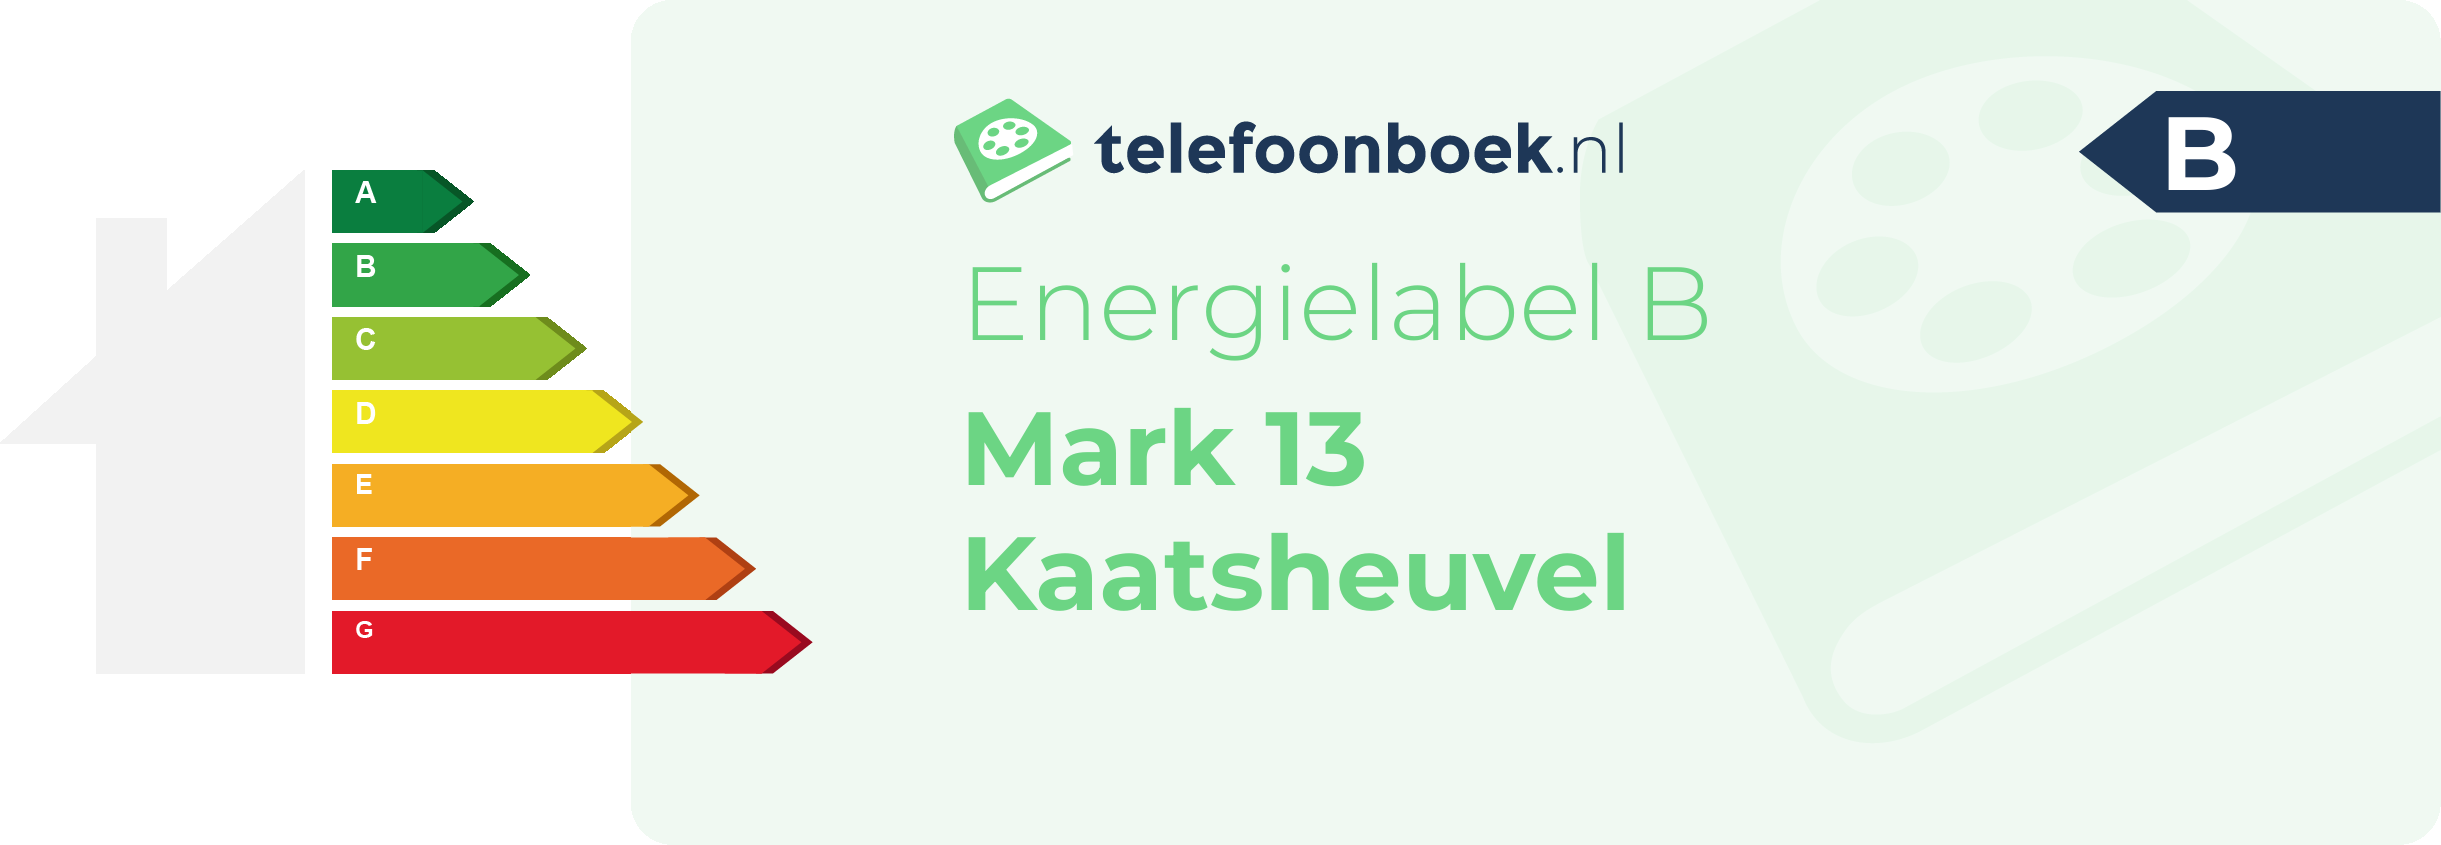 Energielabel Mark 13 Kaatsheuvel